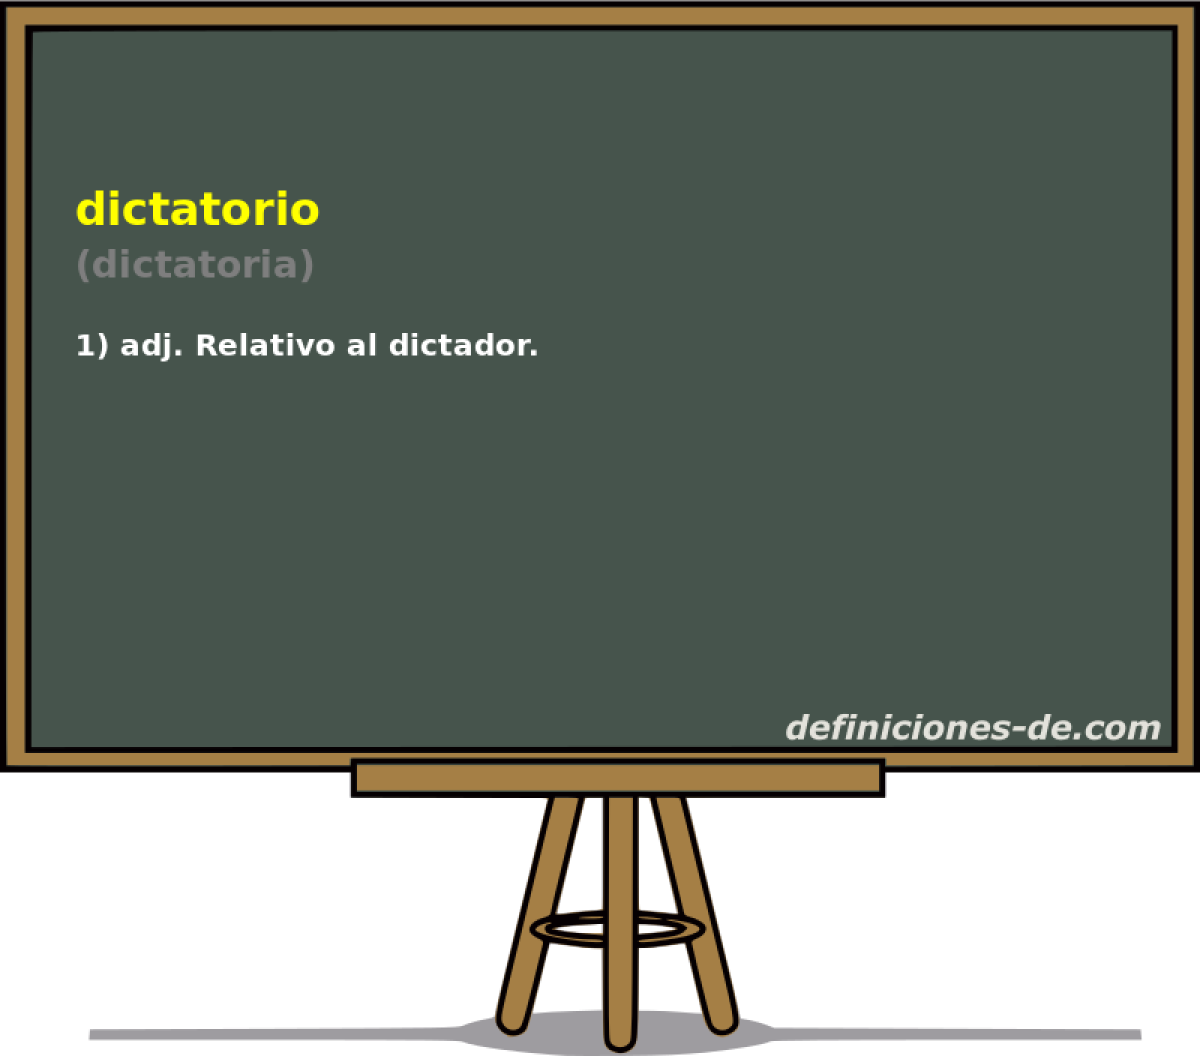 dictatorio (dictatoria)